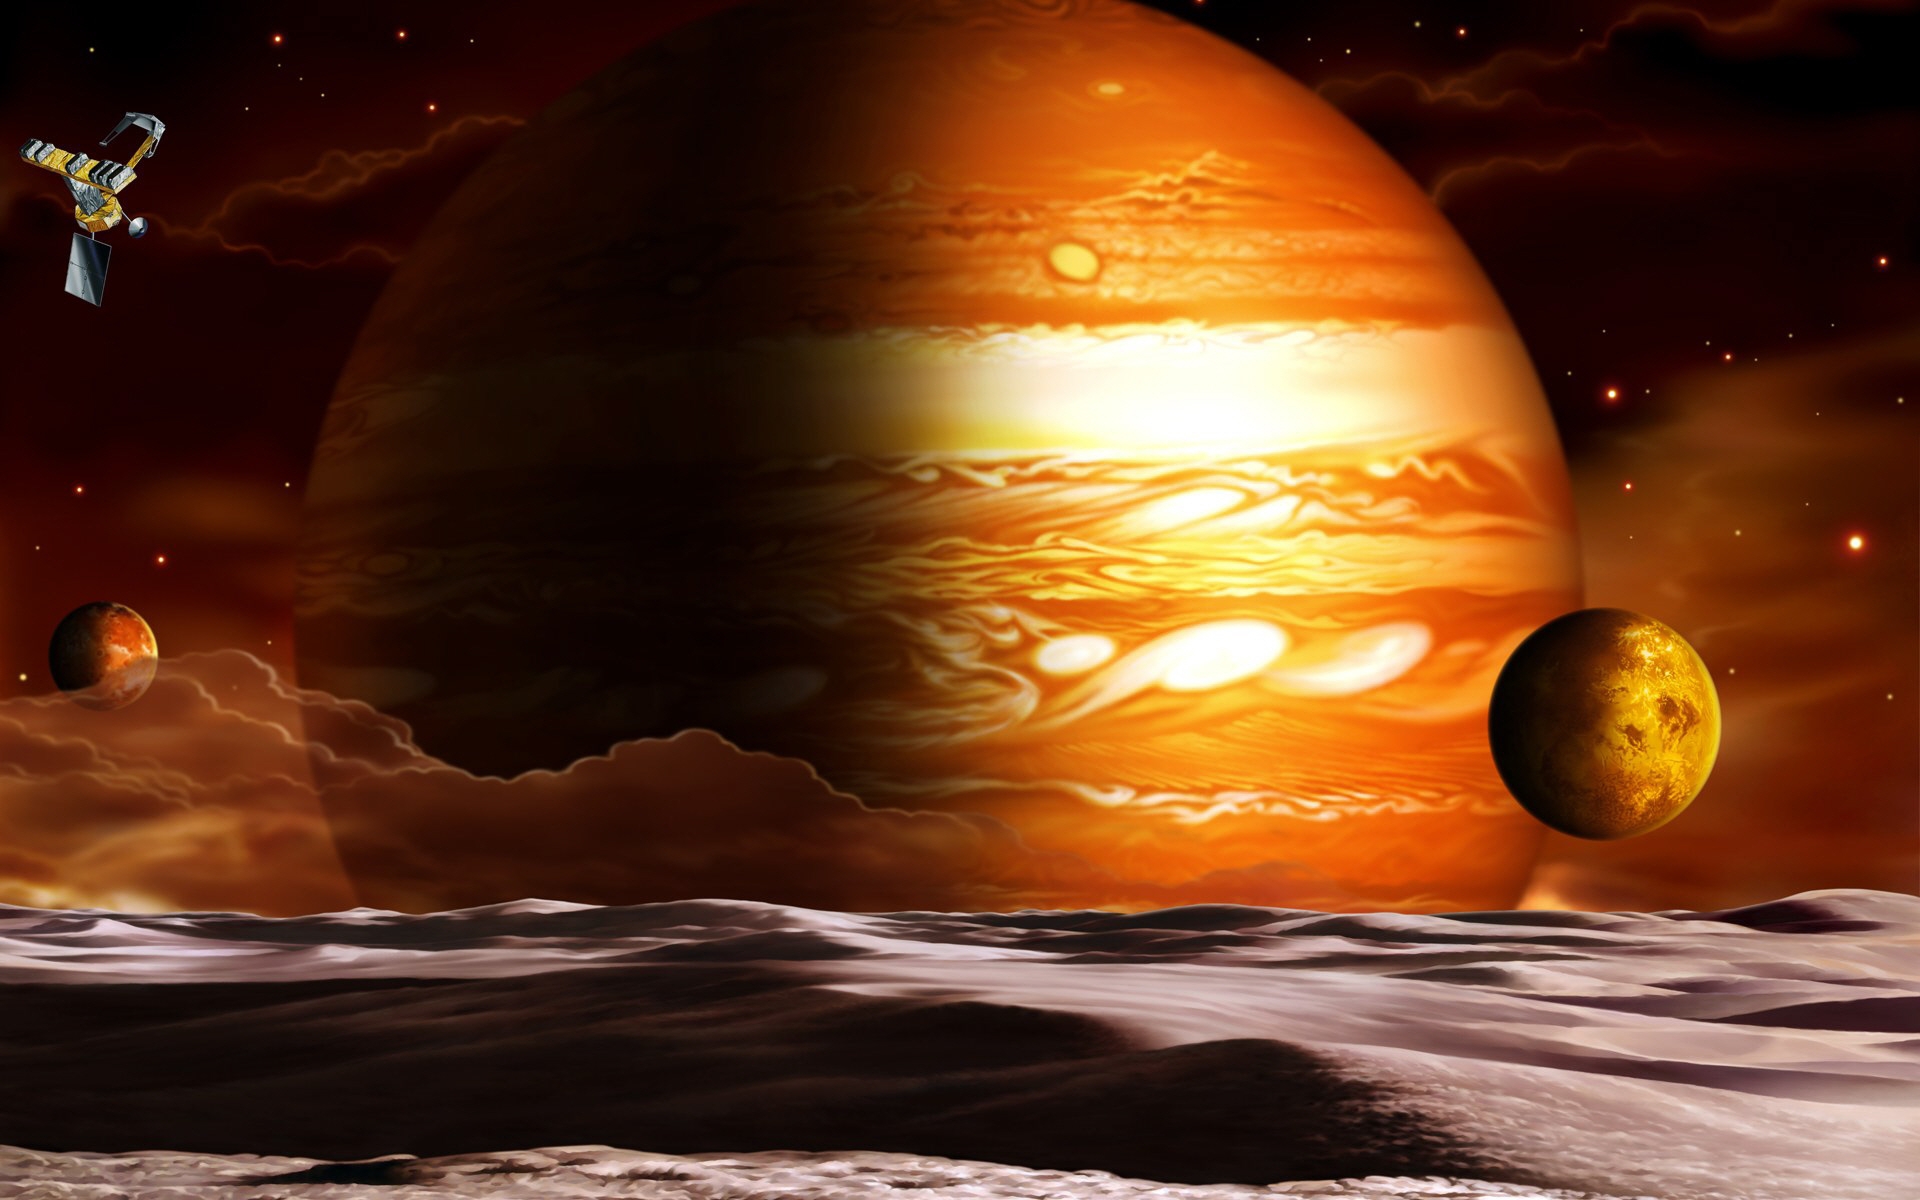 Юпитер газовый гигант